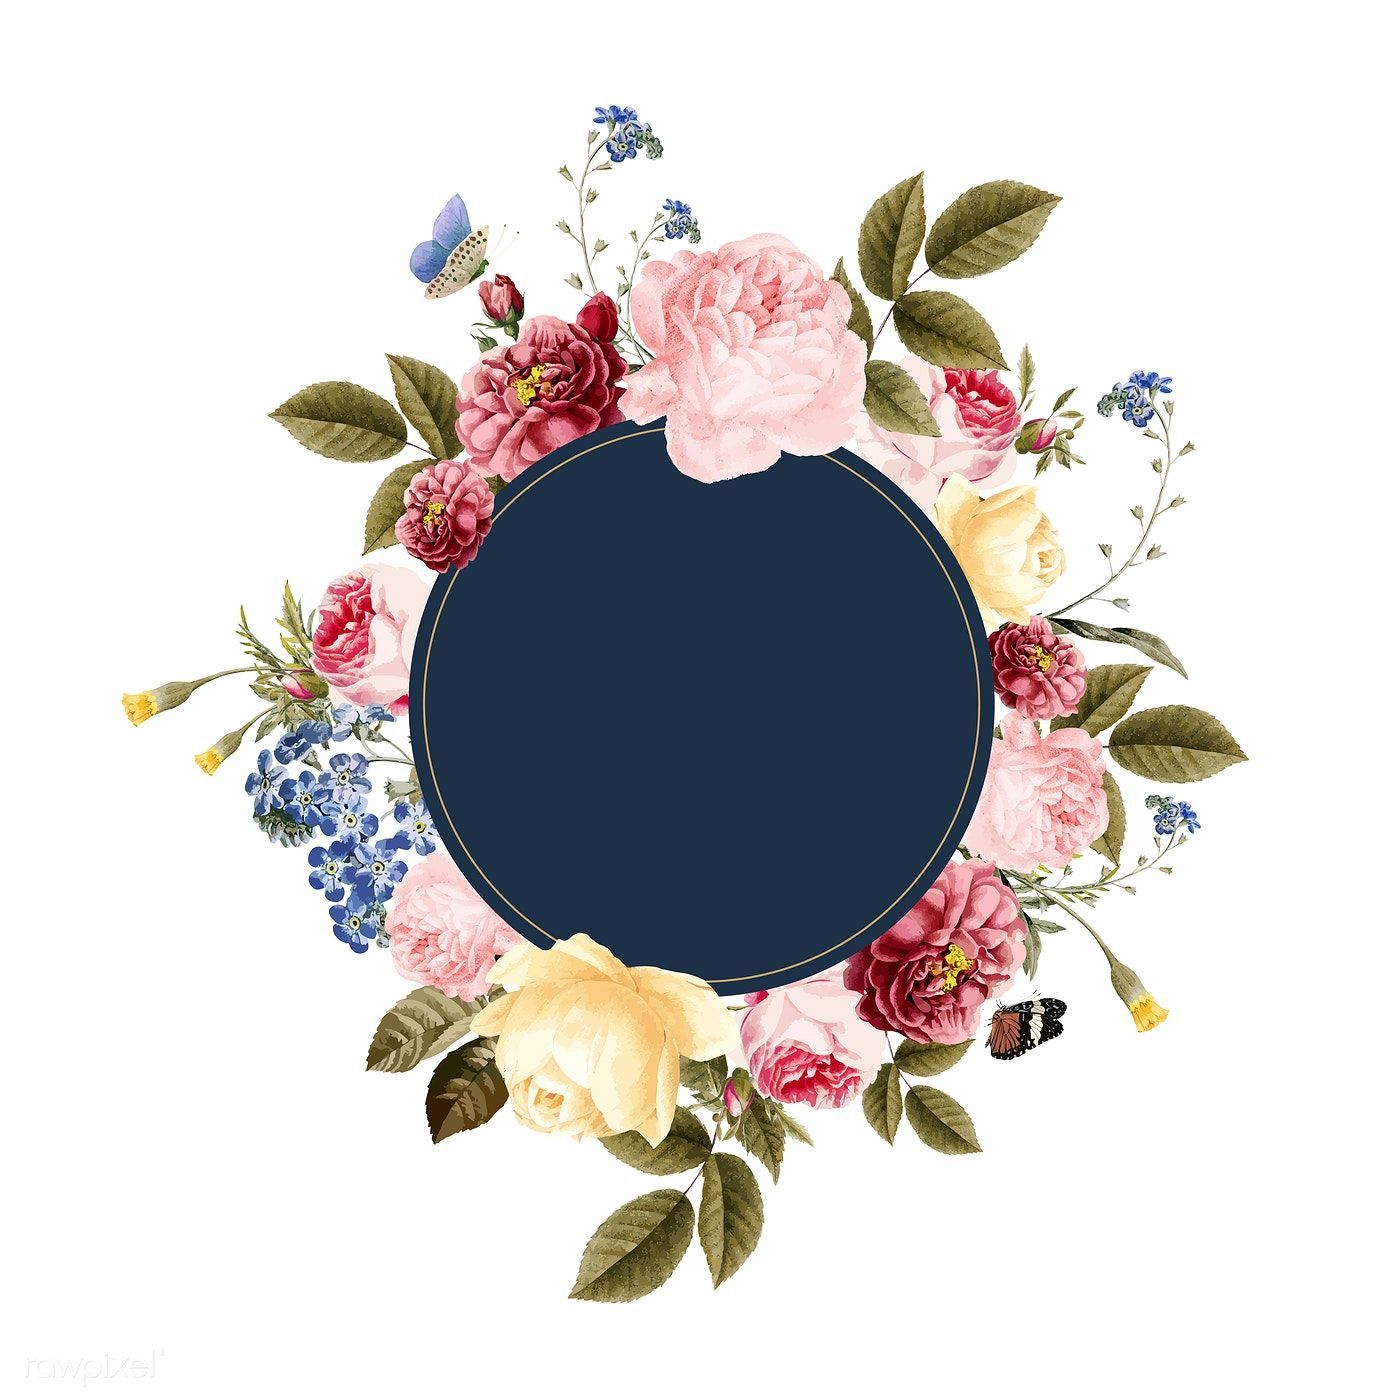 Download premium vector of Blank floral frame card illustration